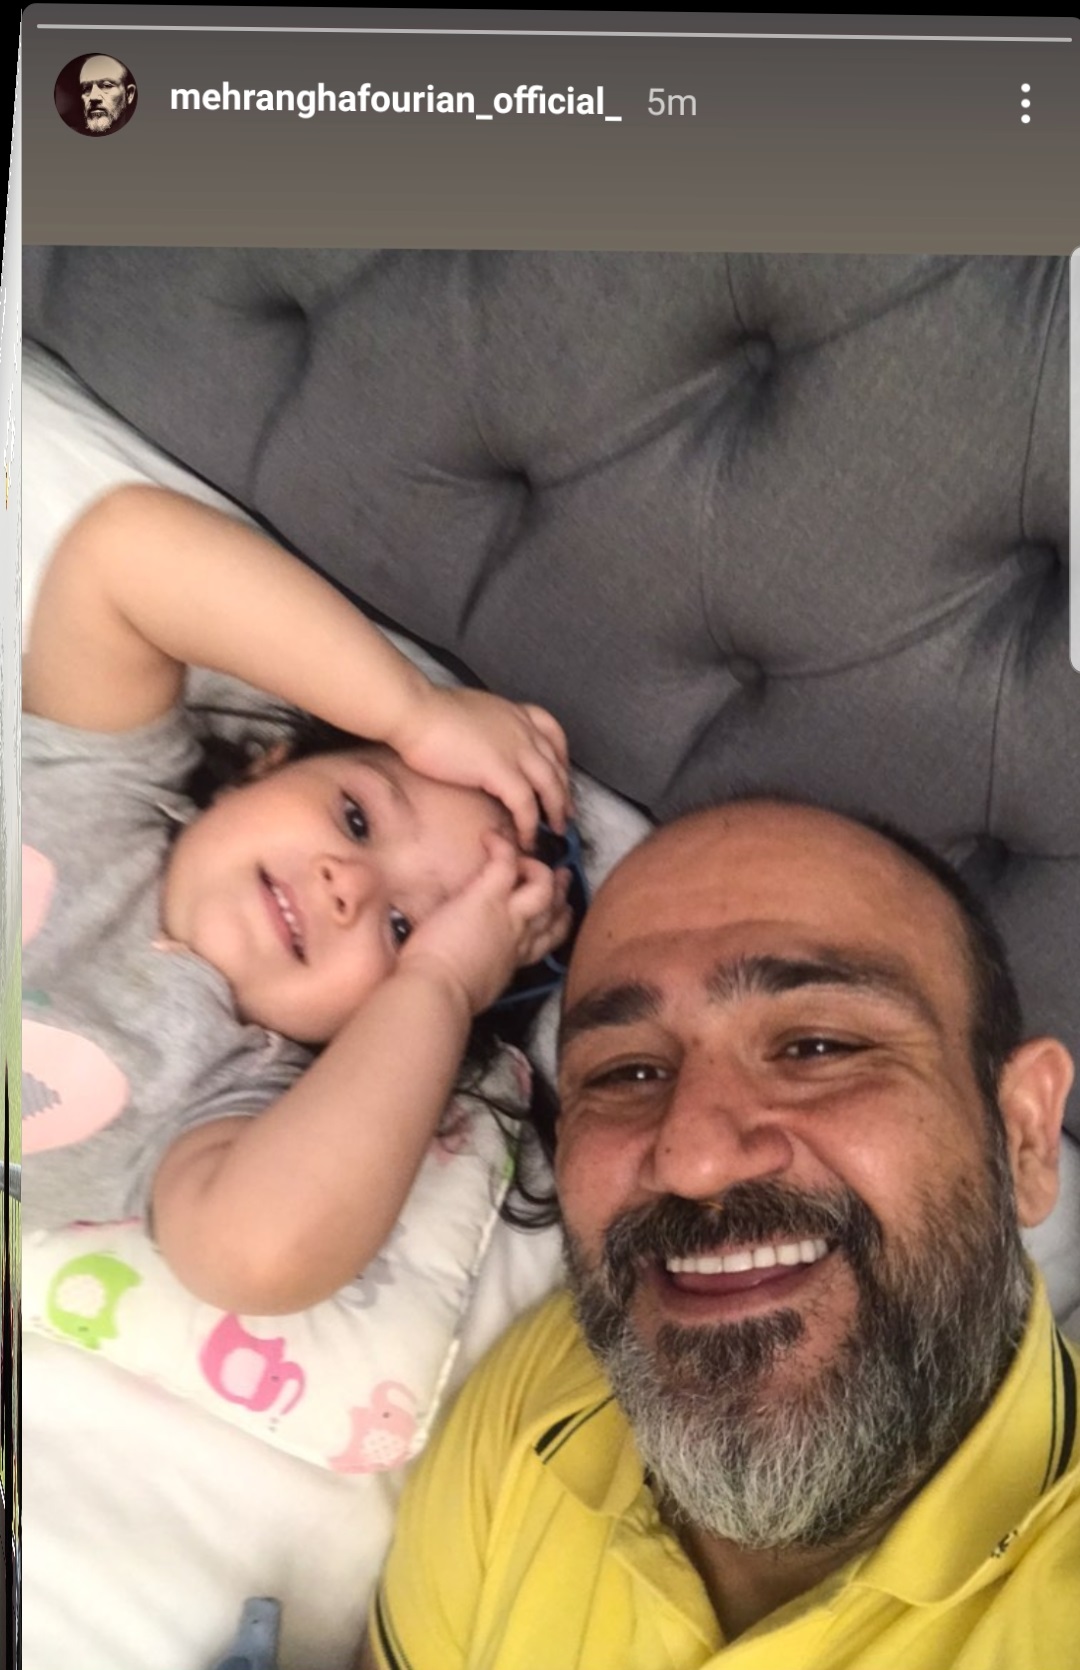  مهران غفوریان با دخترش